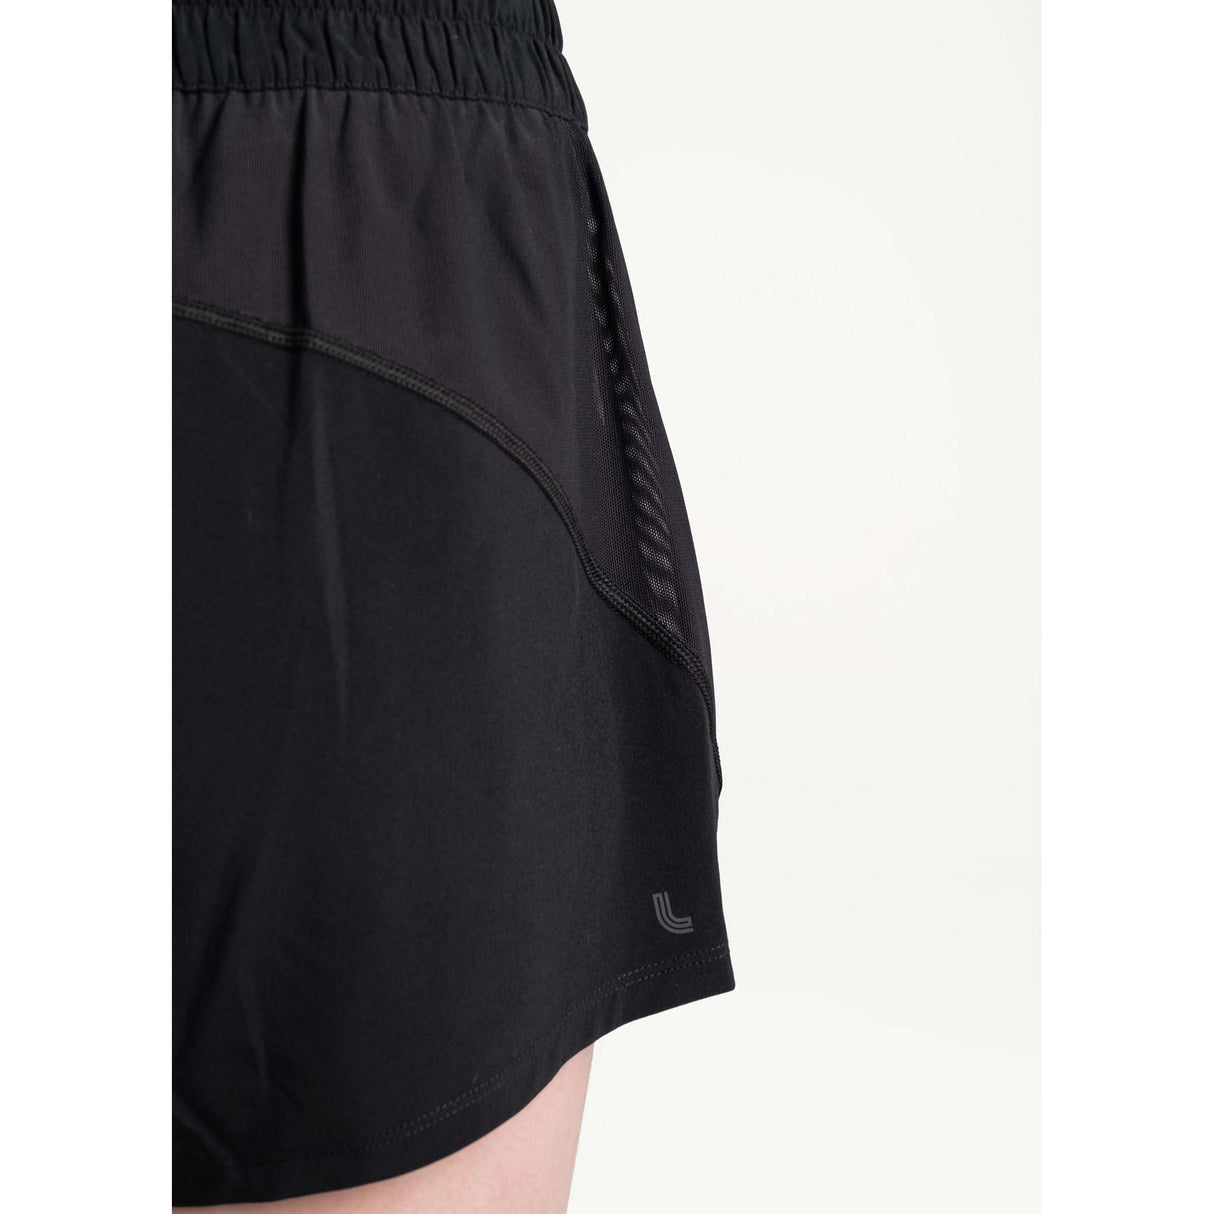 Lole Running shorts de course à pied femme details- noir